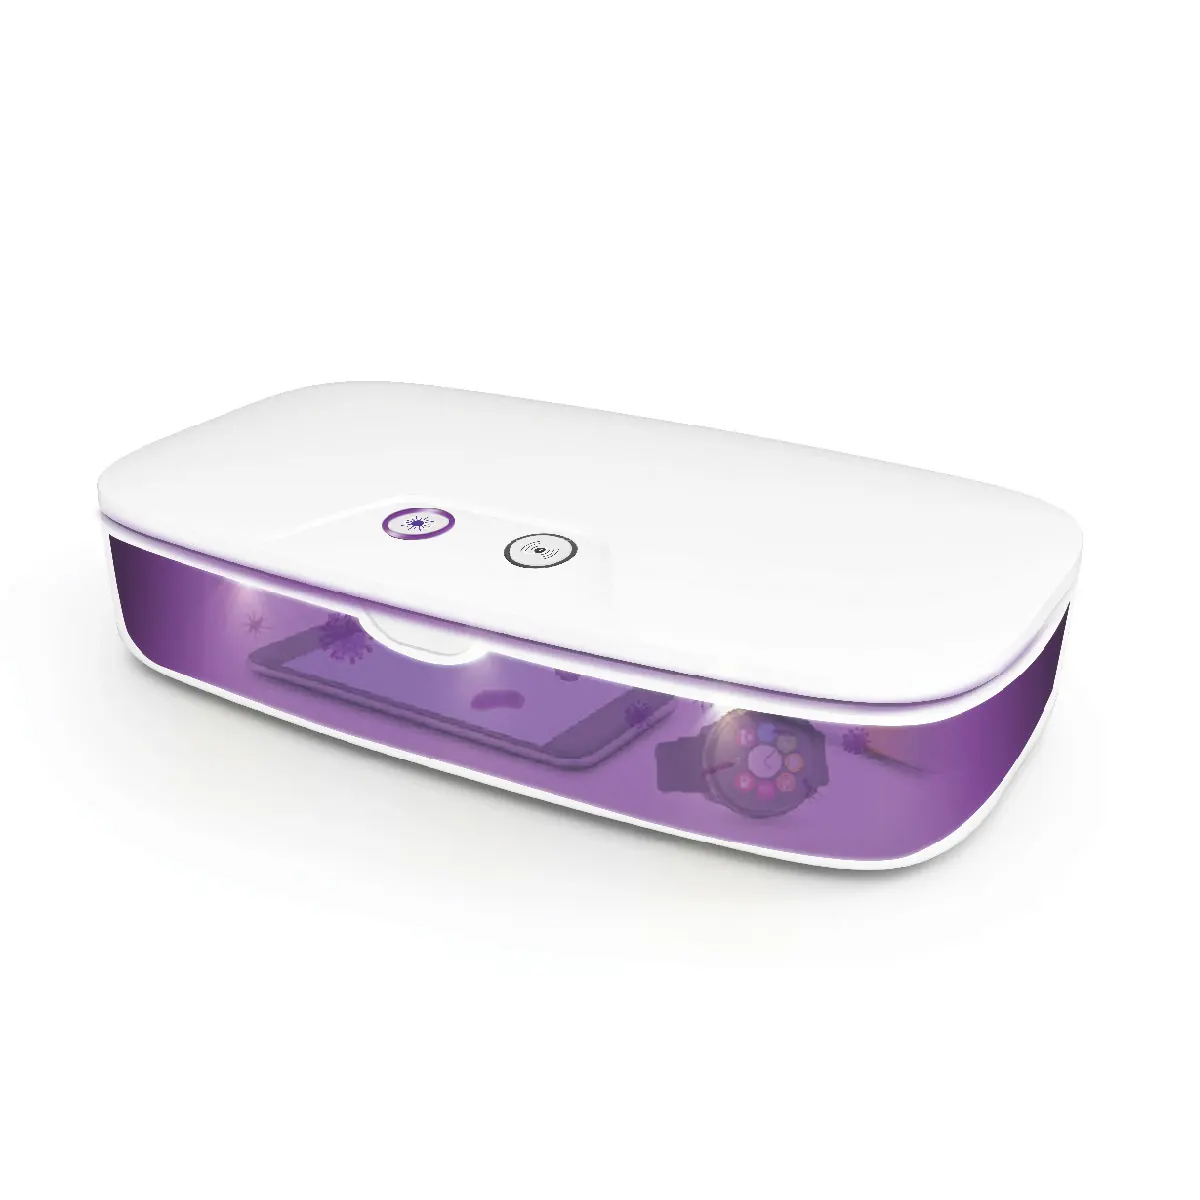 Multi-functional Uvc Led Sterilizer UV Sanitizing Box UV Phone Sanitizer with Wireless Charging